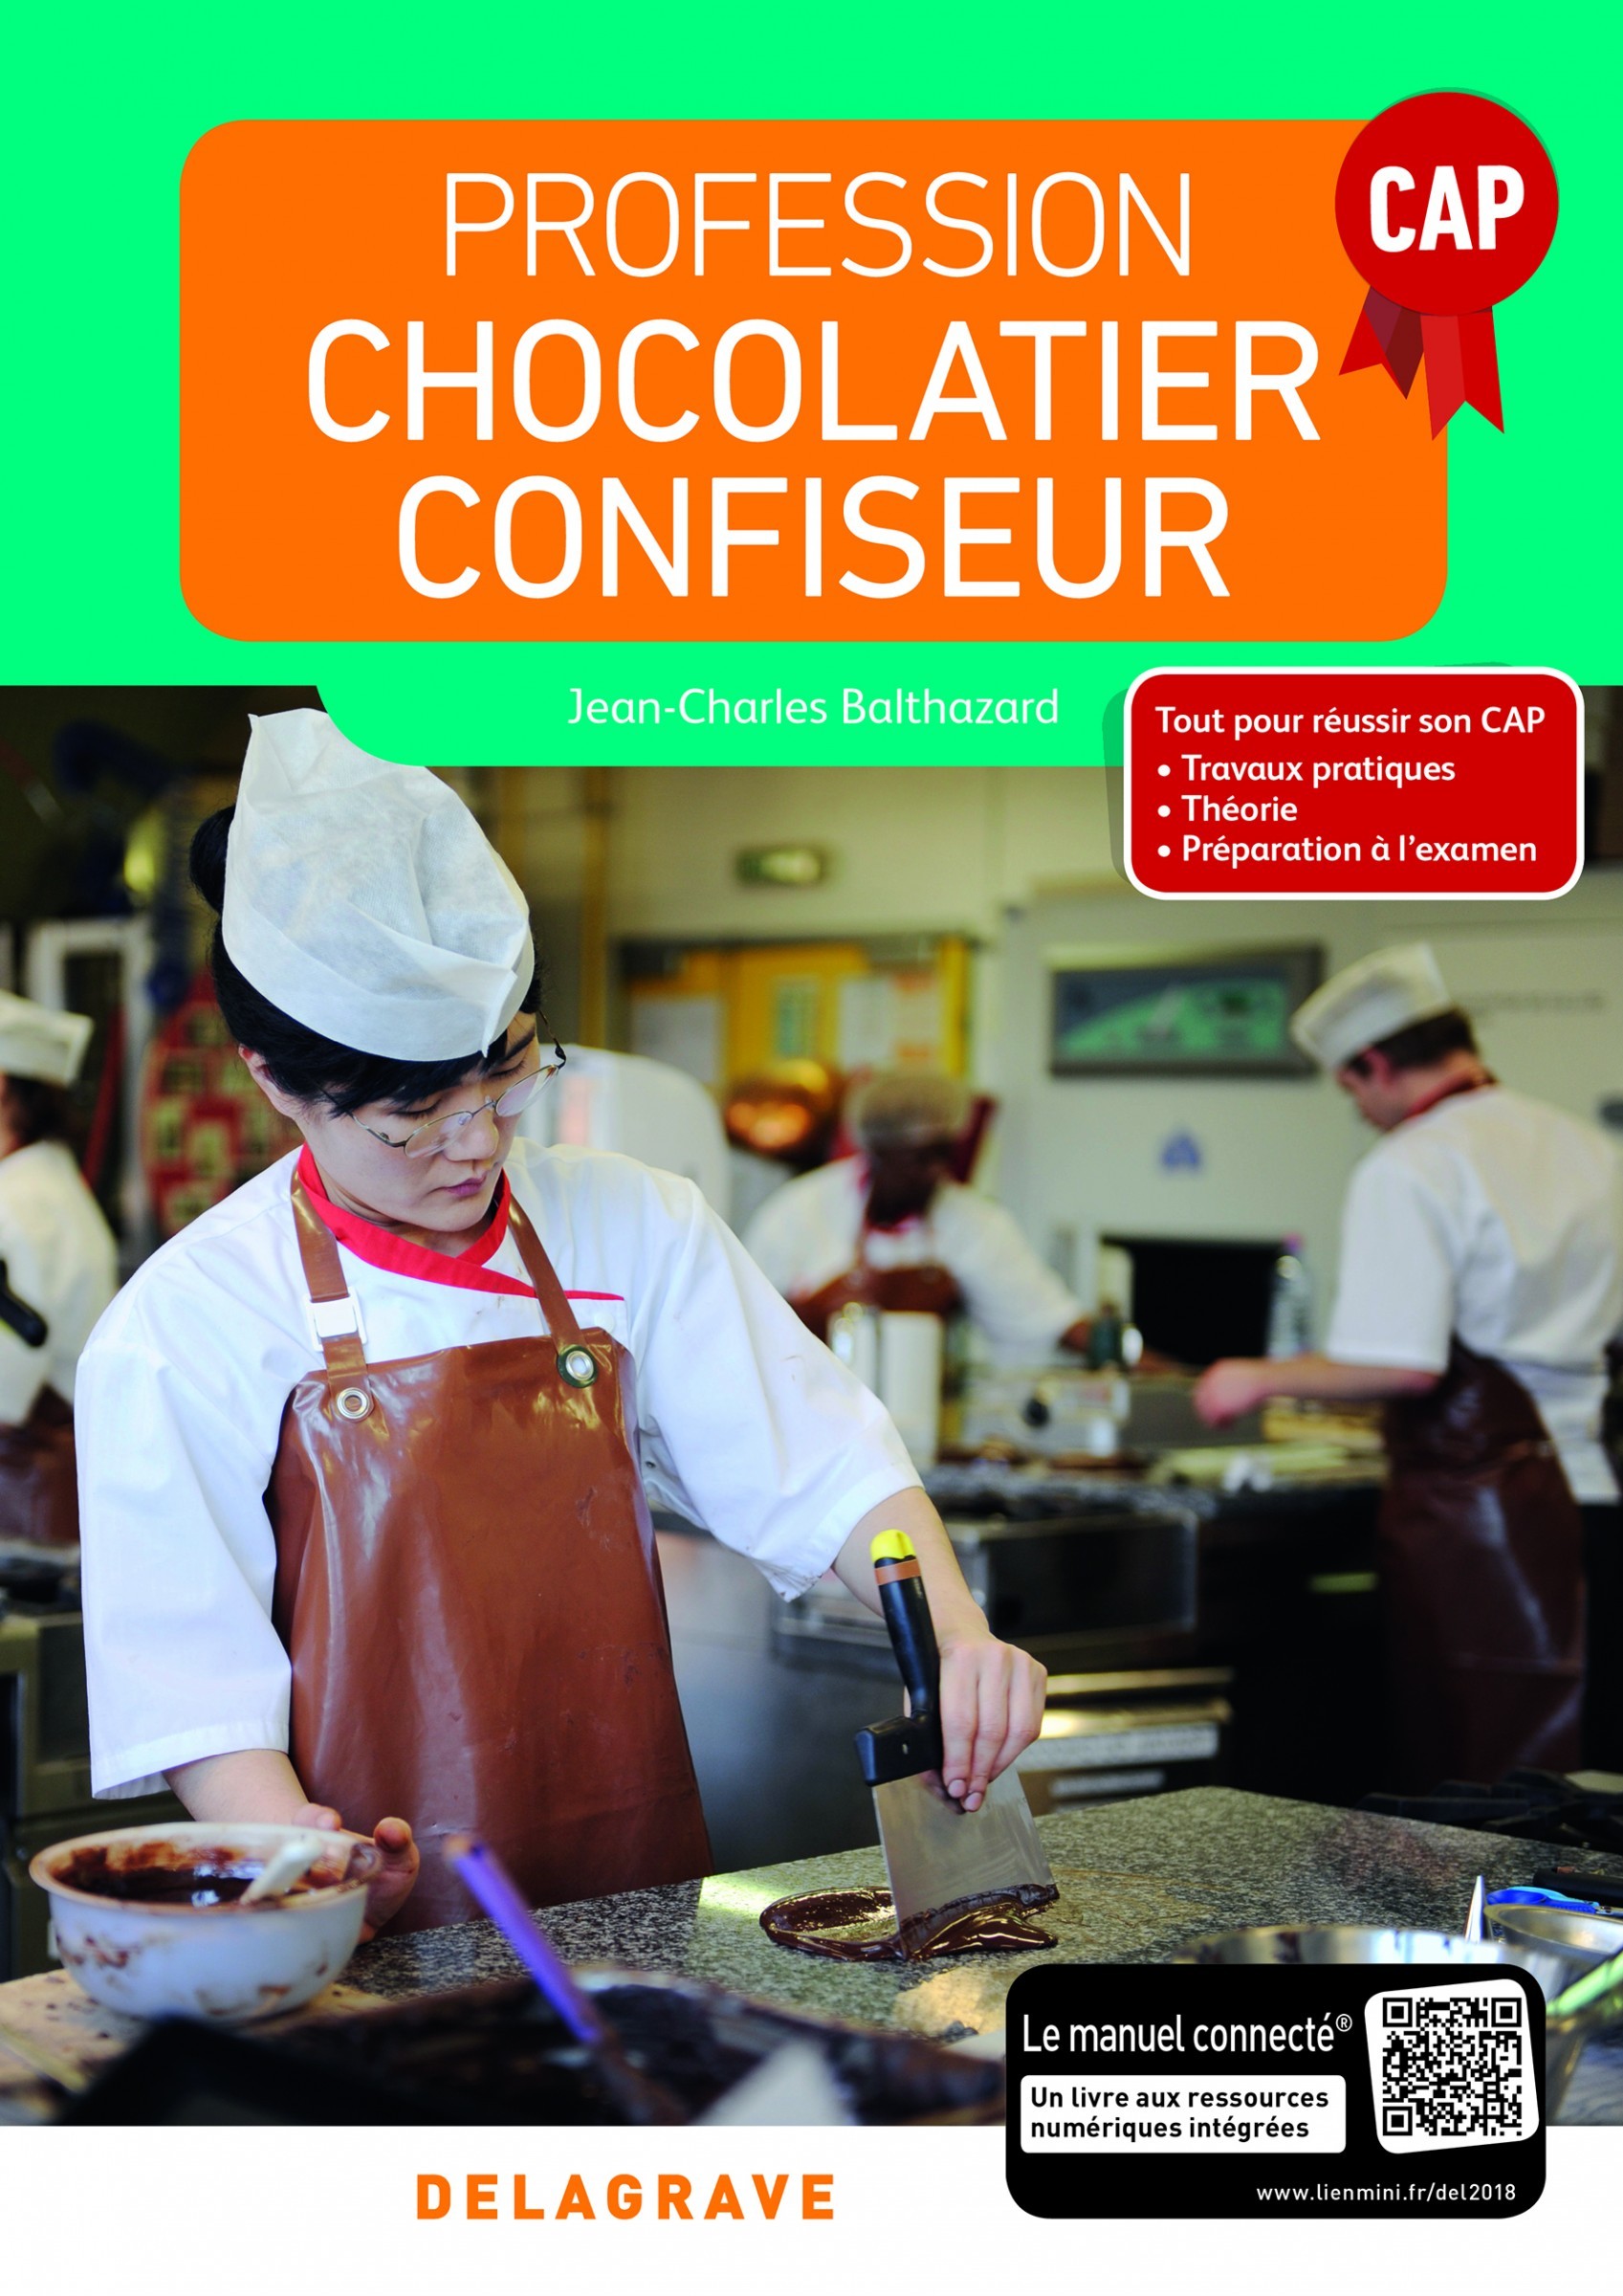 Chocolatier - Matériel et d'ustensile pour chocolatier - Meilleur du Chef